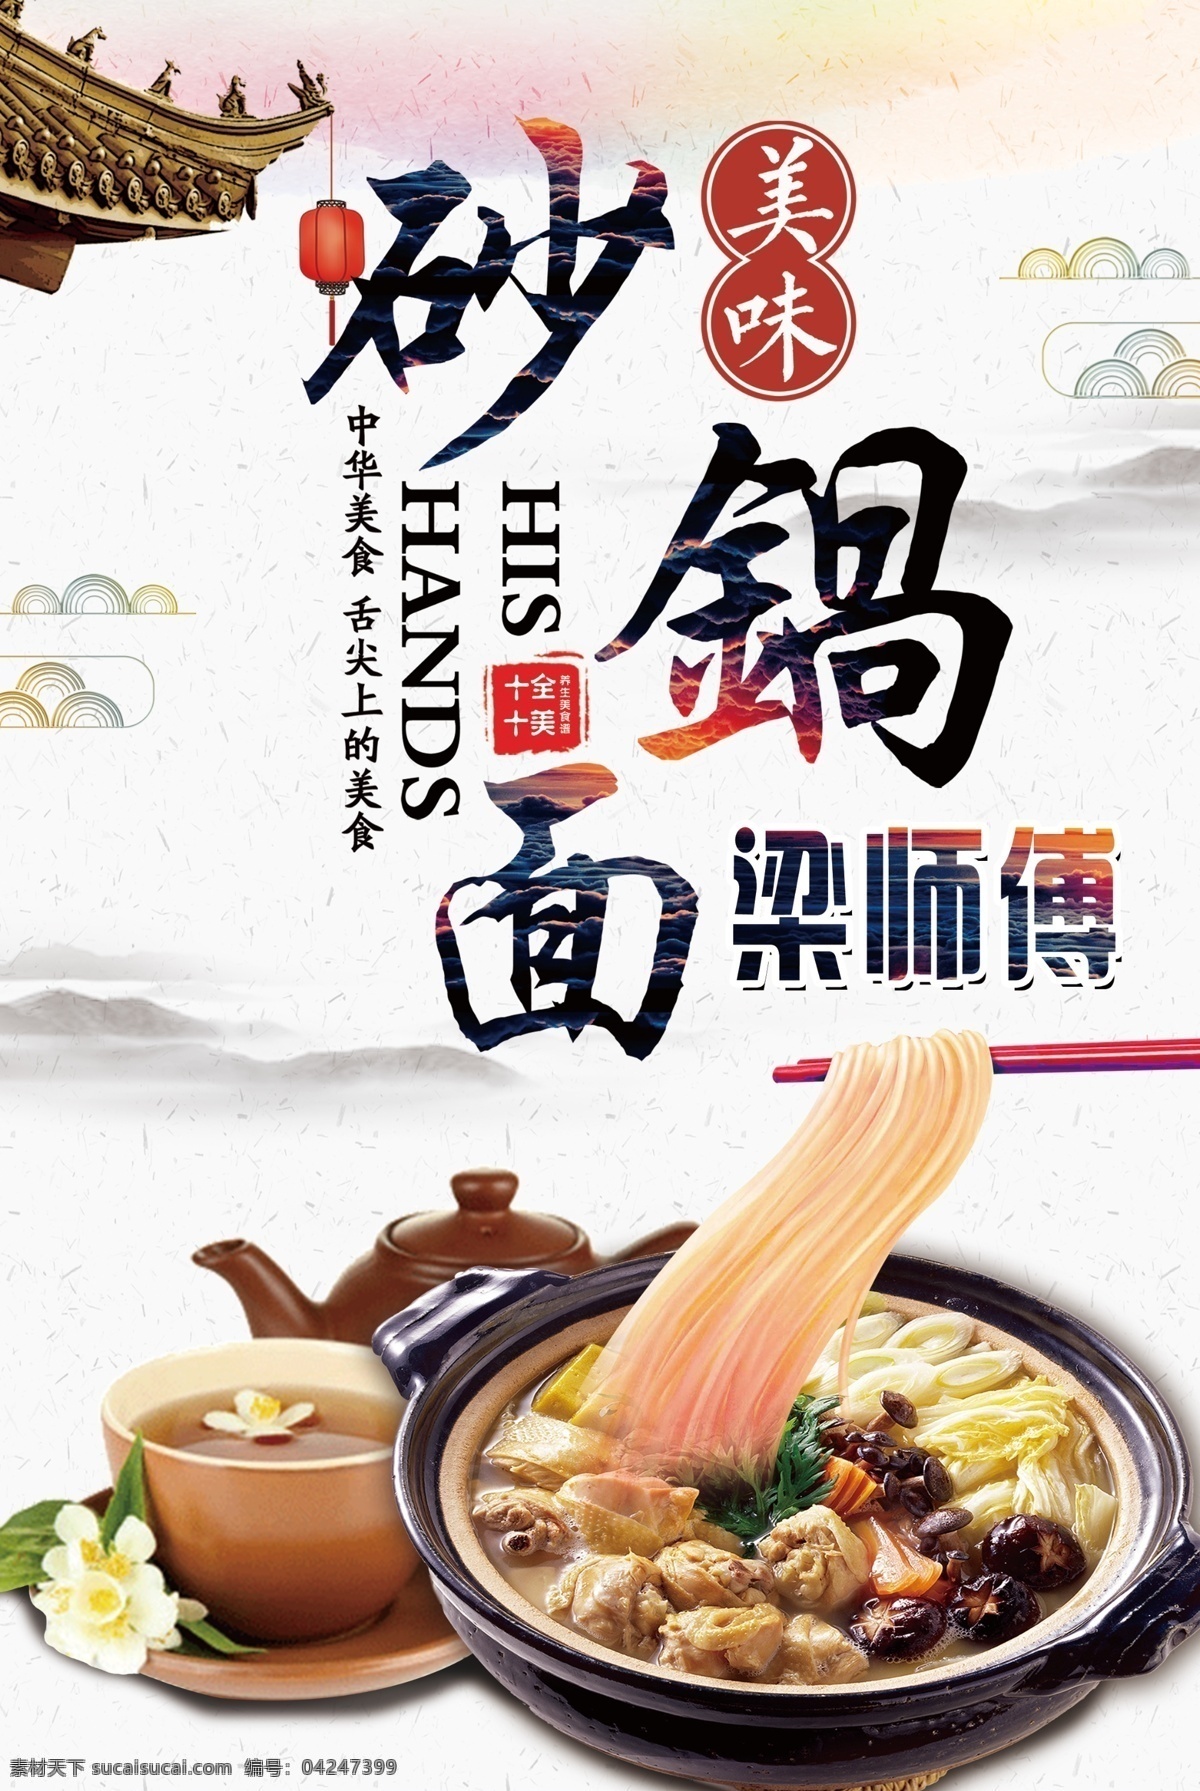 砂锅面 中国风背景 中国风素材 美食宣传 水墨画 美食海报 分层